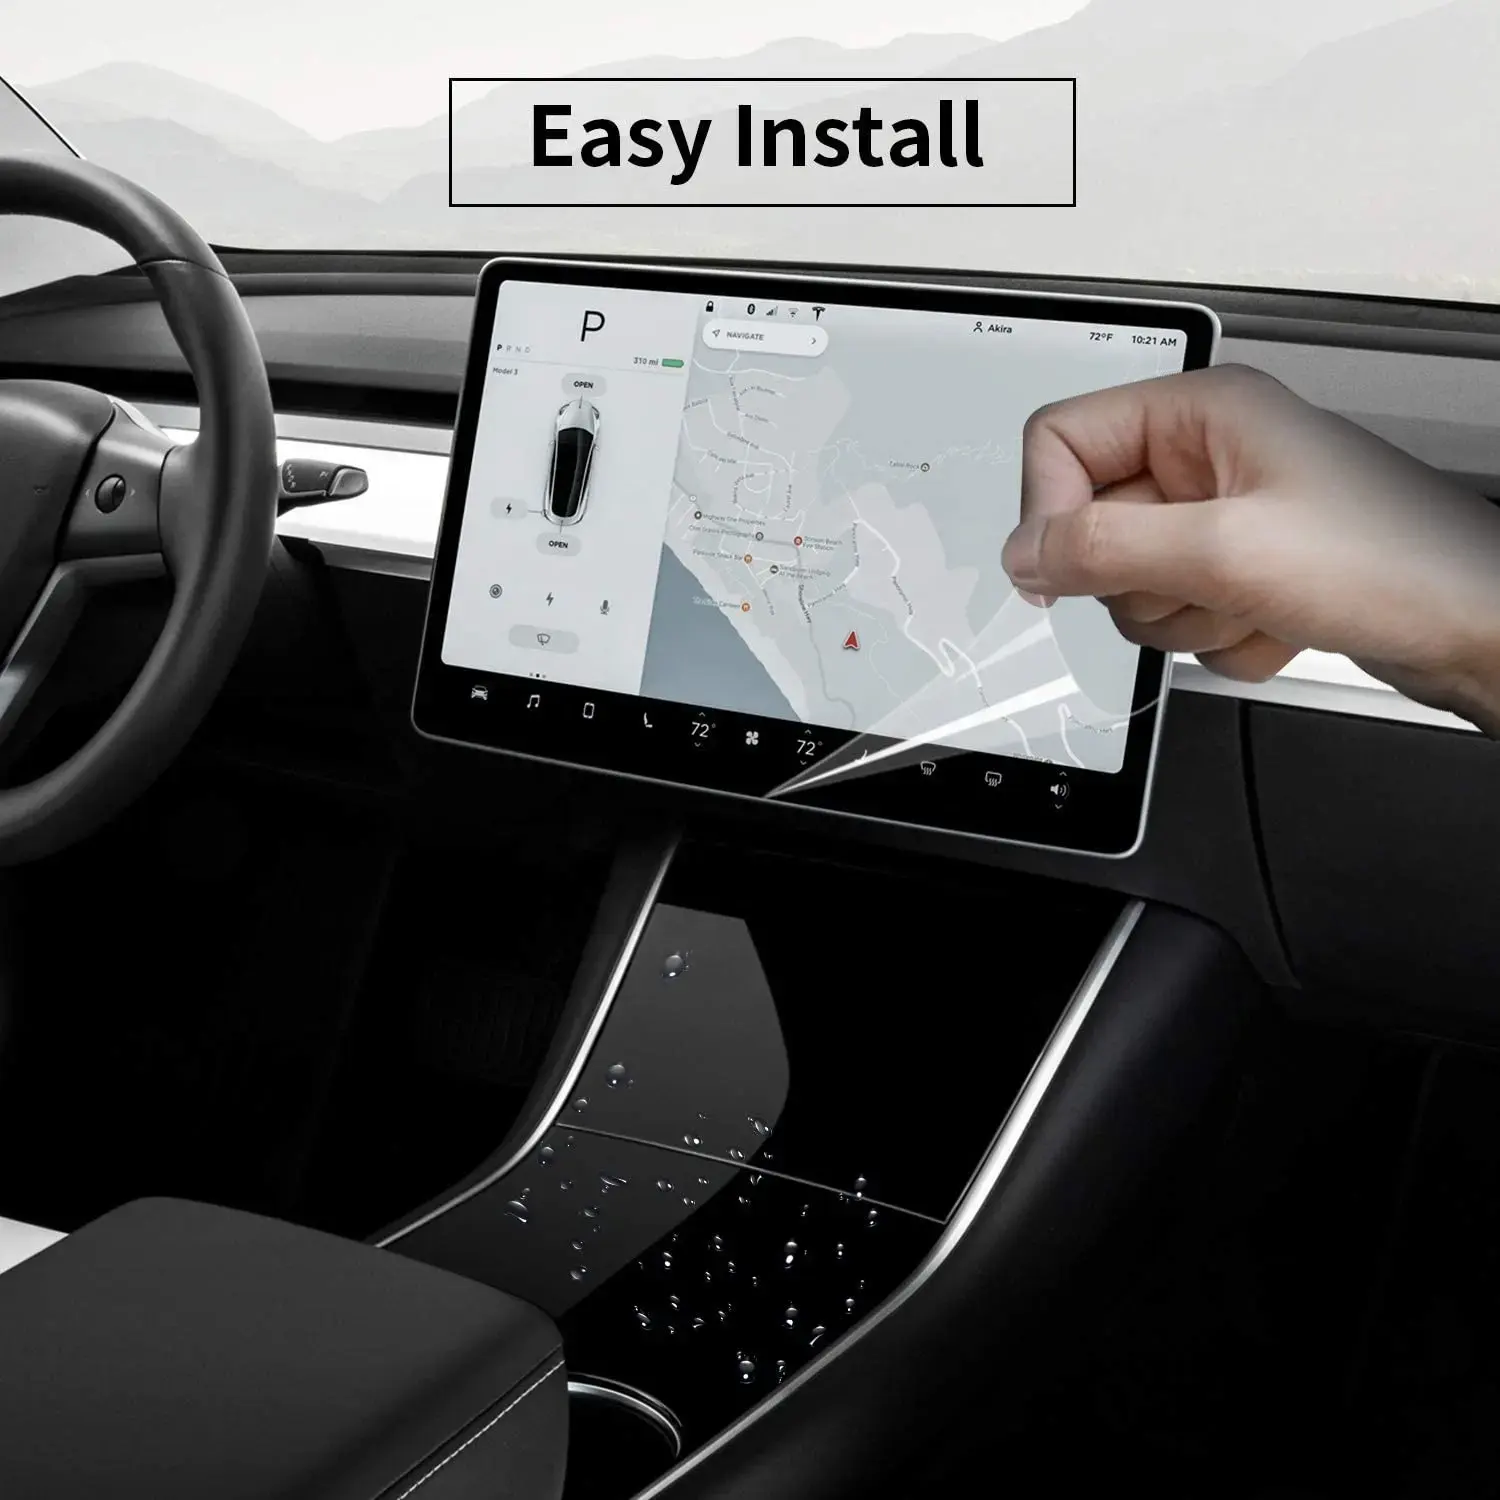 Auto Navigations-Bildschirmschutz für BMW X3 X5 Tesla 3/Y/X 9H Härte hohe Klarheit transparent Anti-Explosion Anti-Blendung kratz